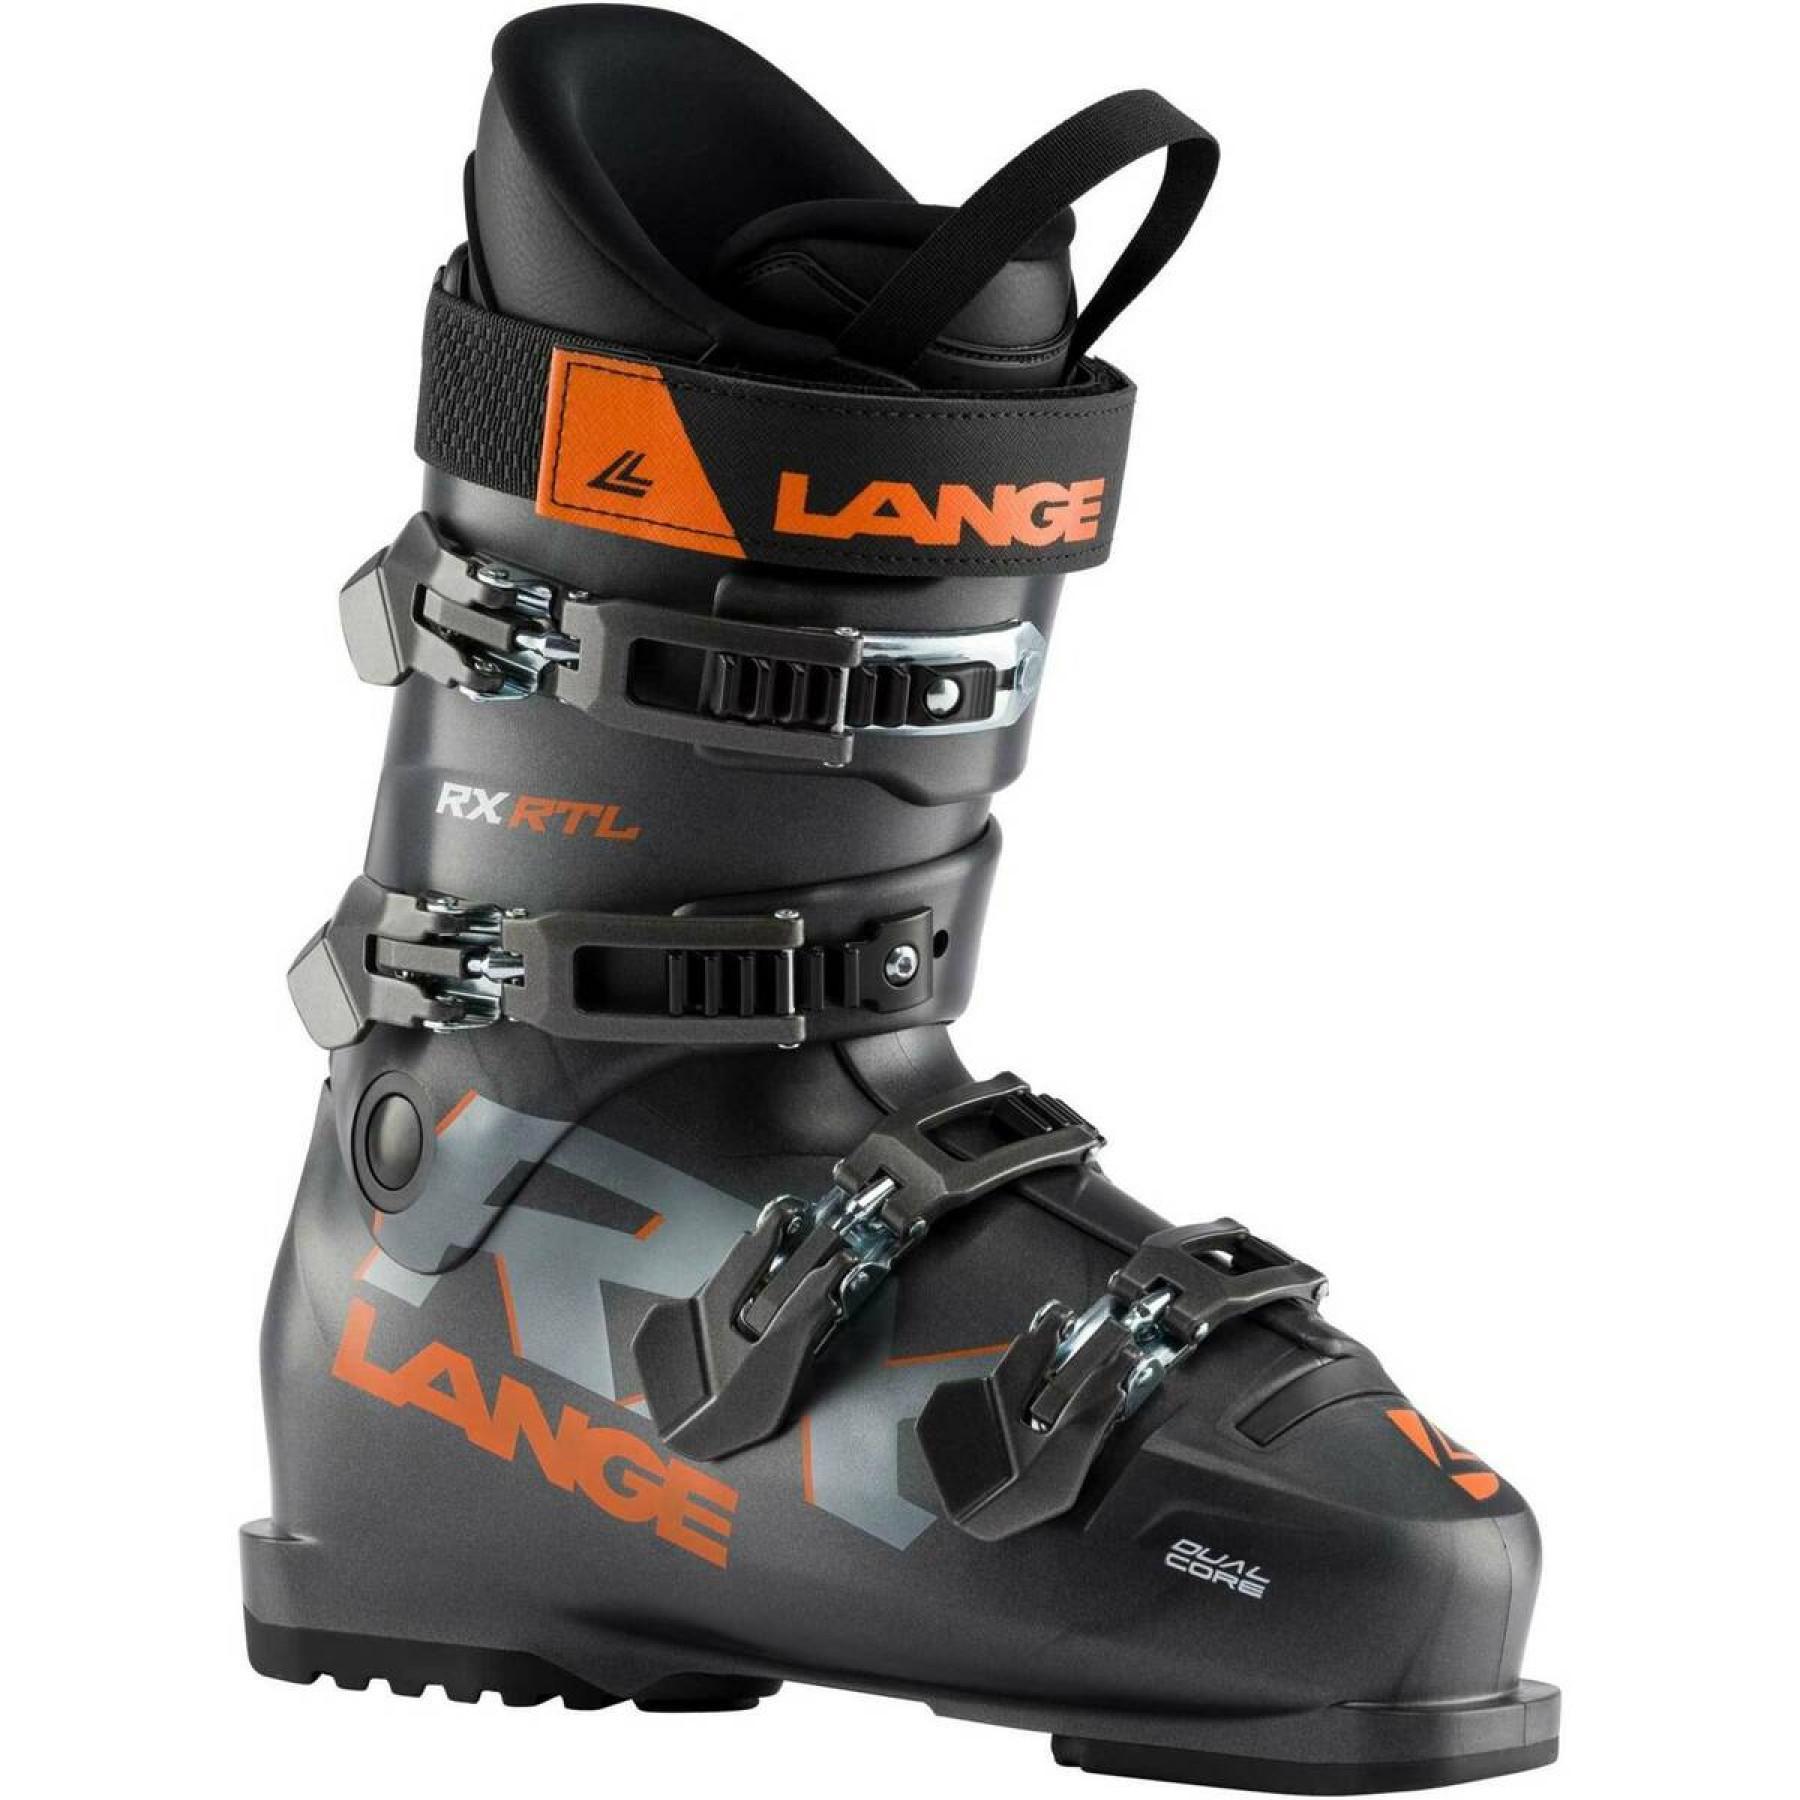 Chaussures de ski Lange rx rtl